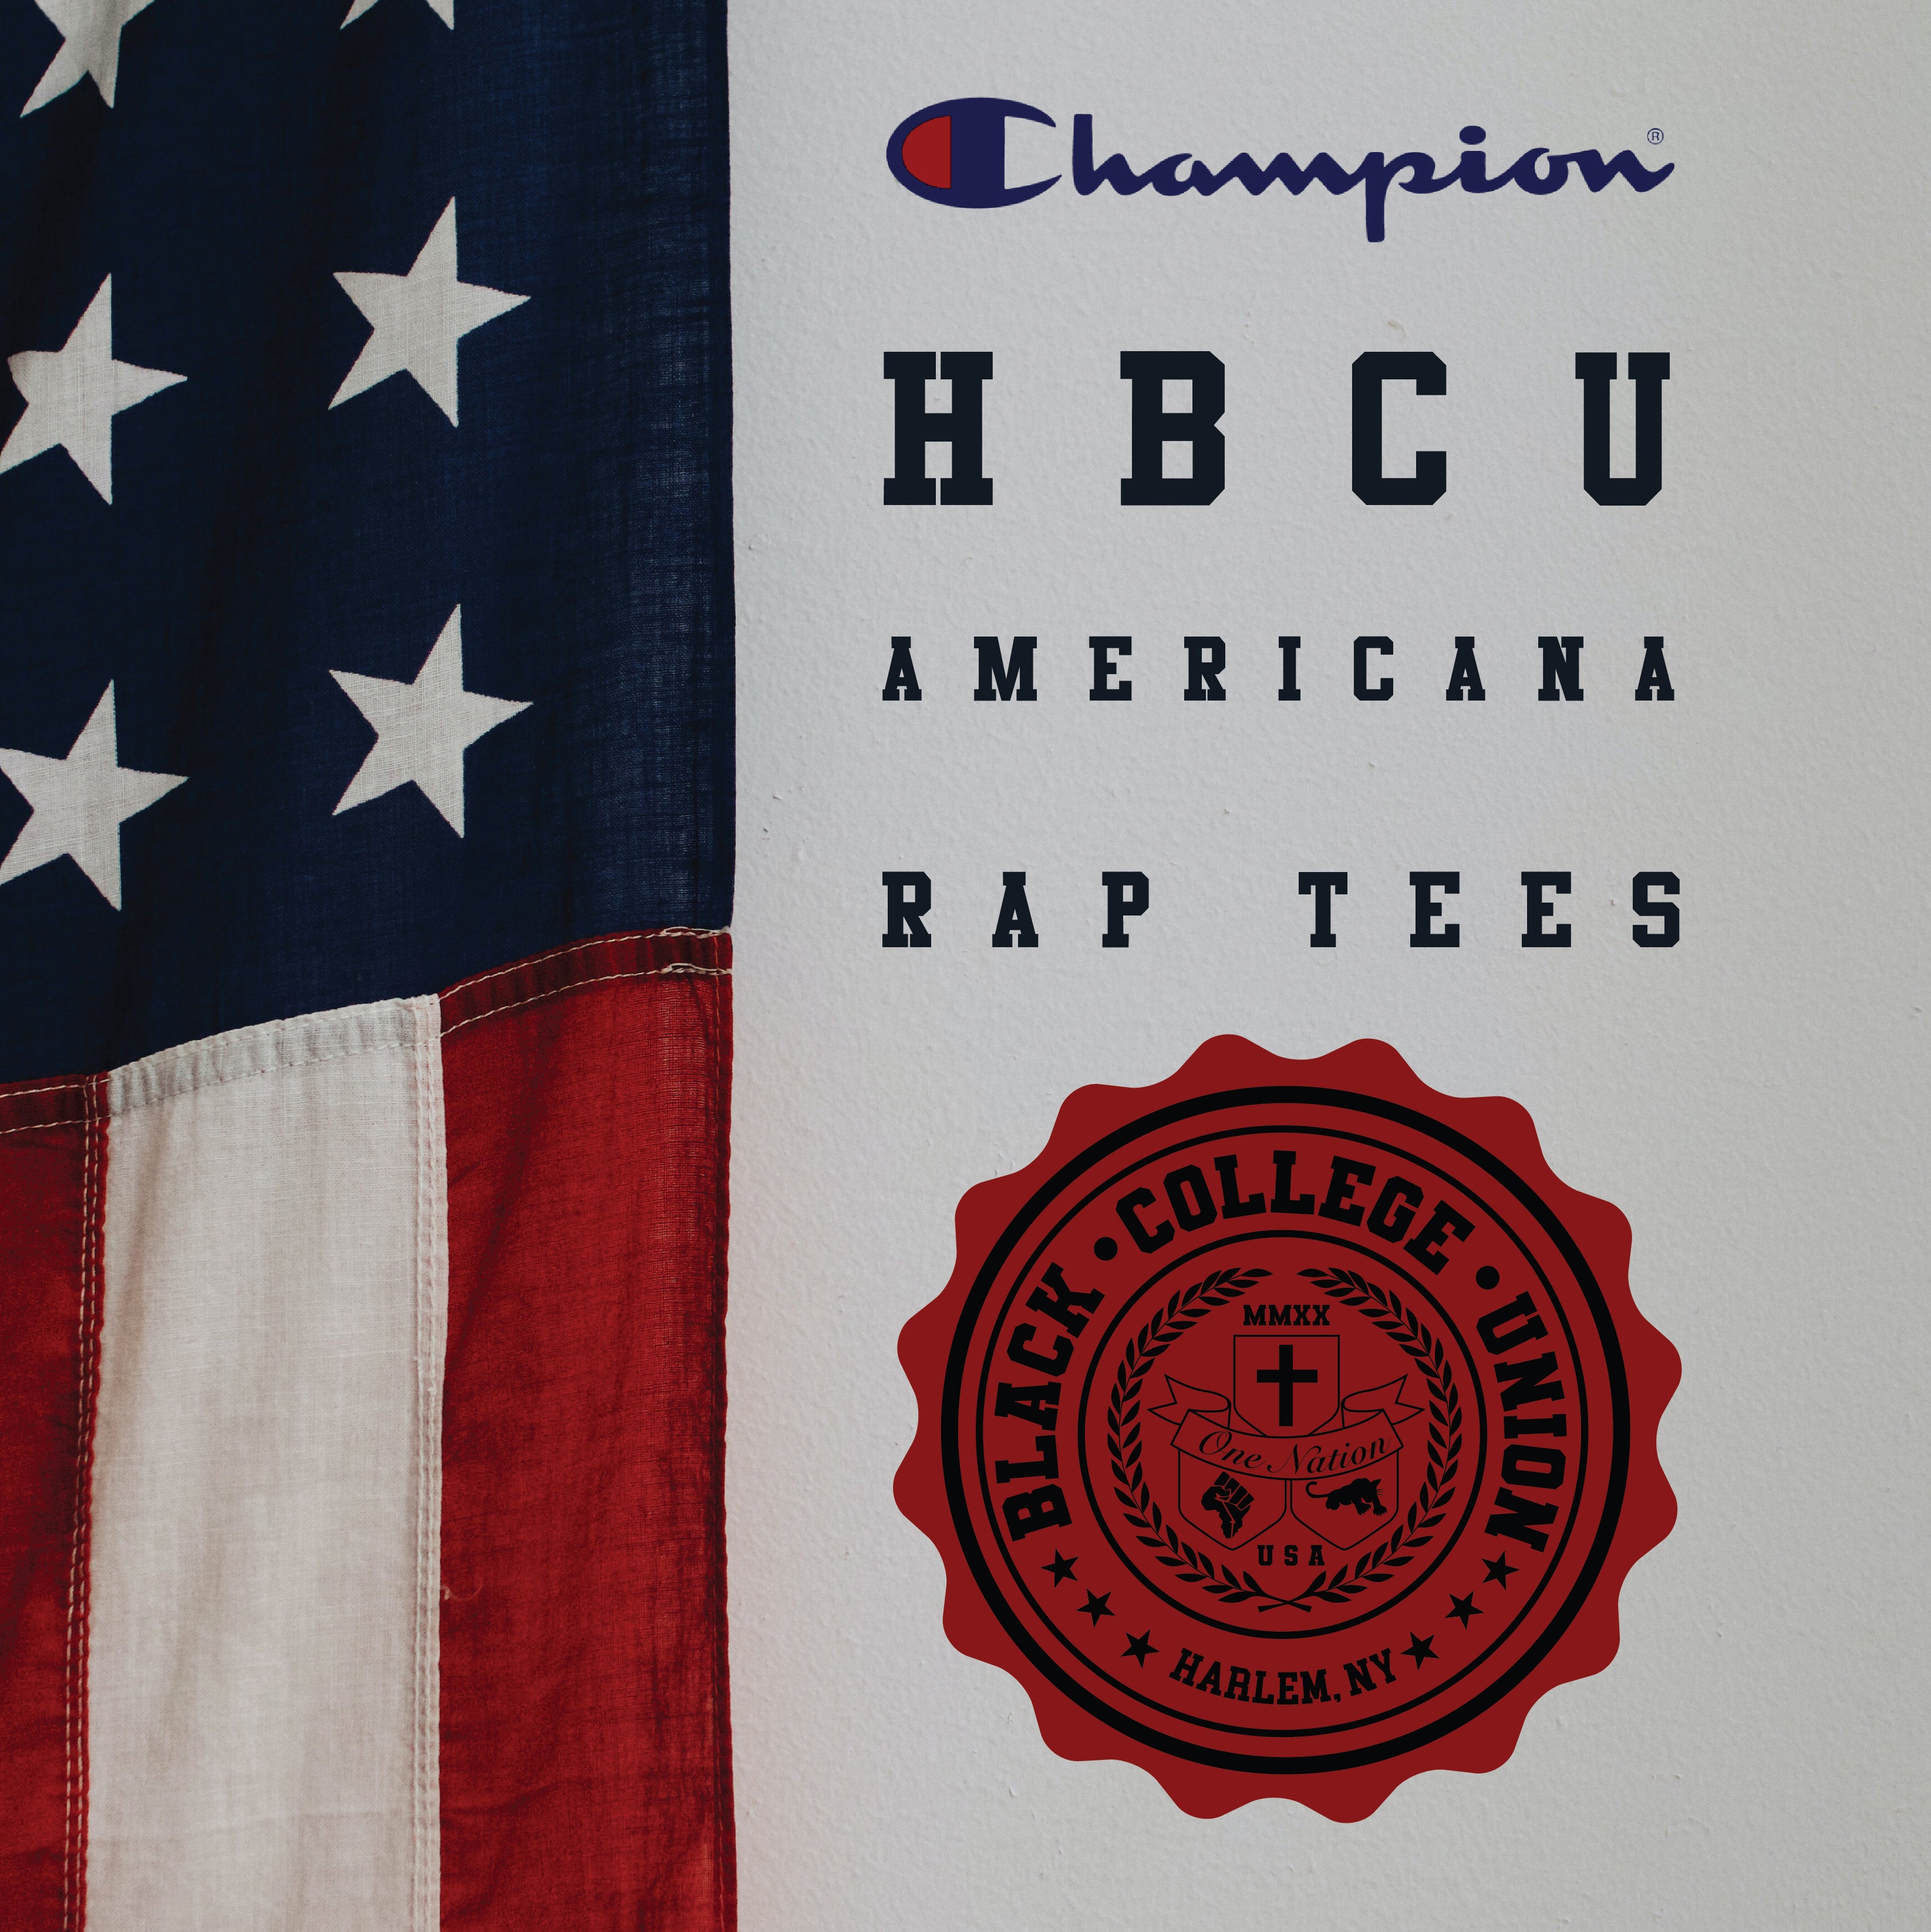 BCU X Champion Original HBCU Americana Rap Tee - Texas College